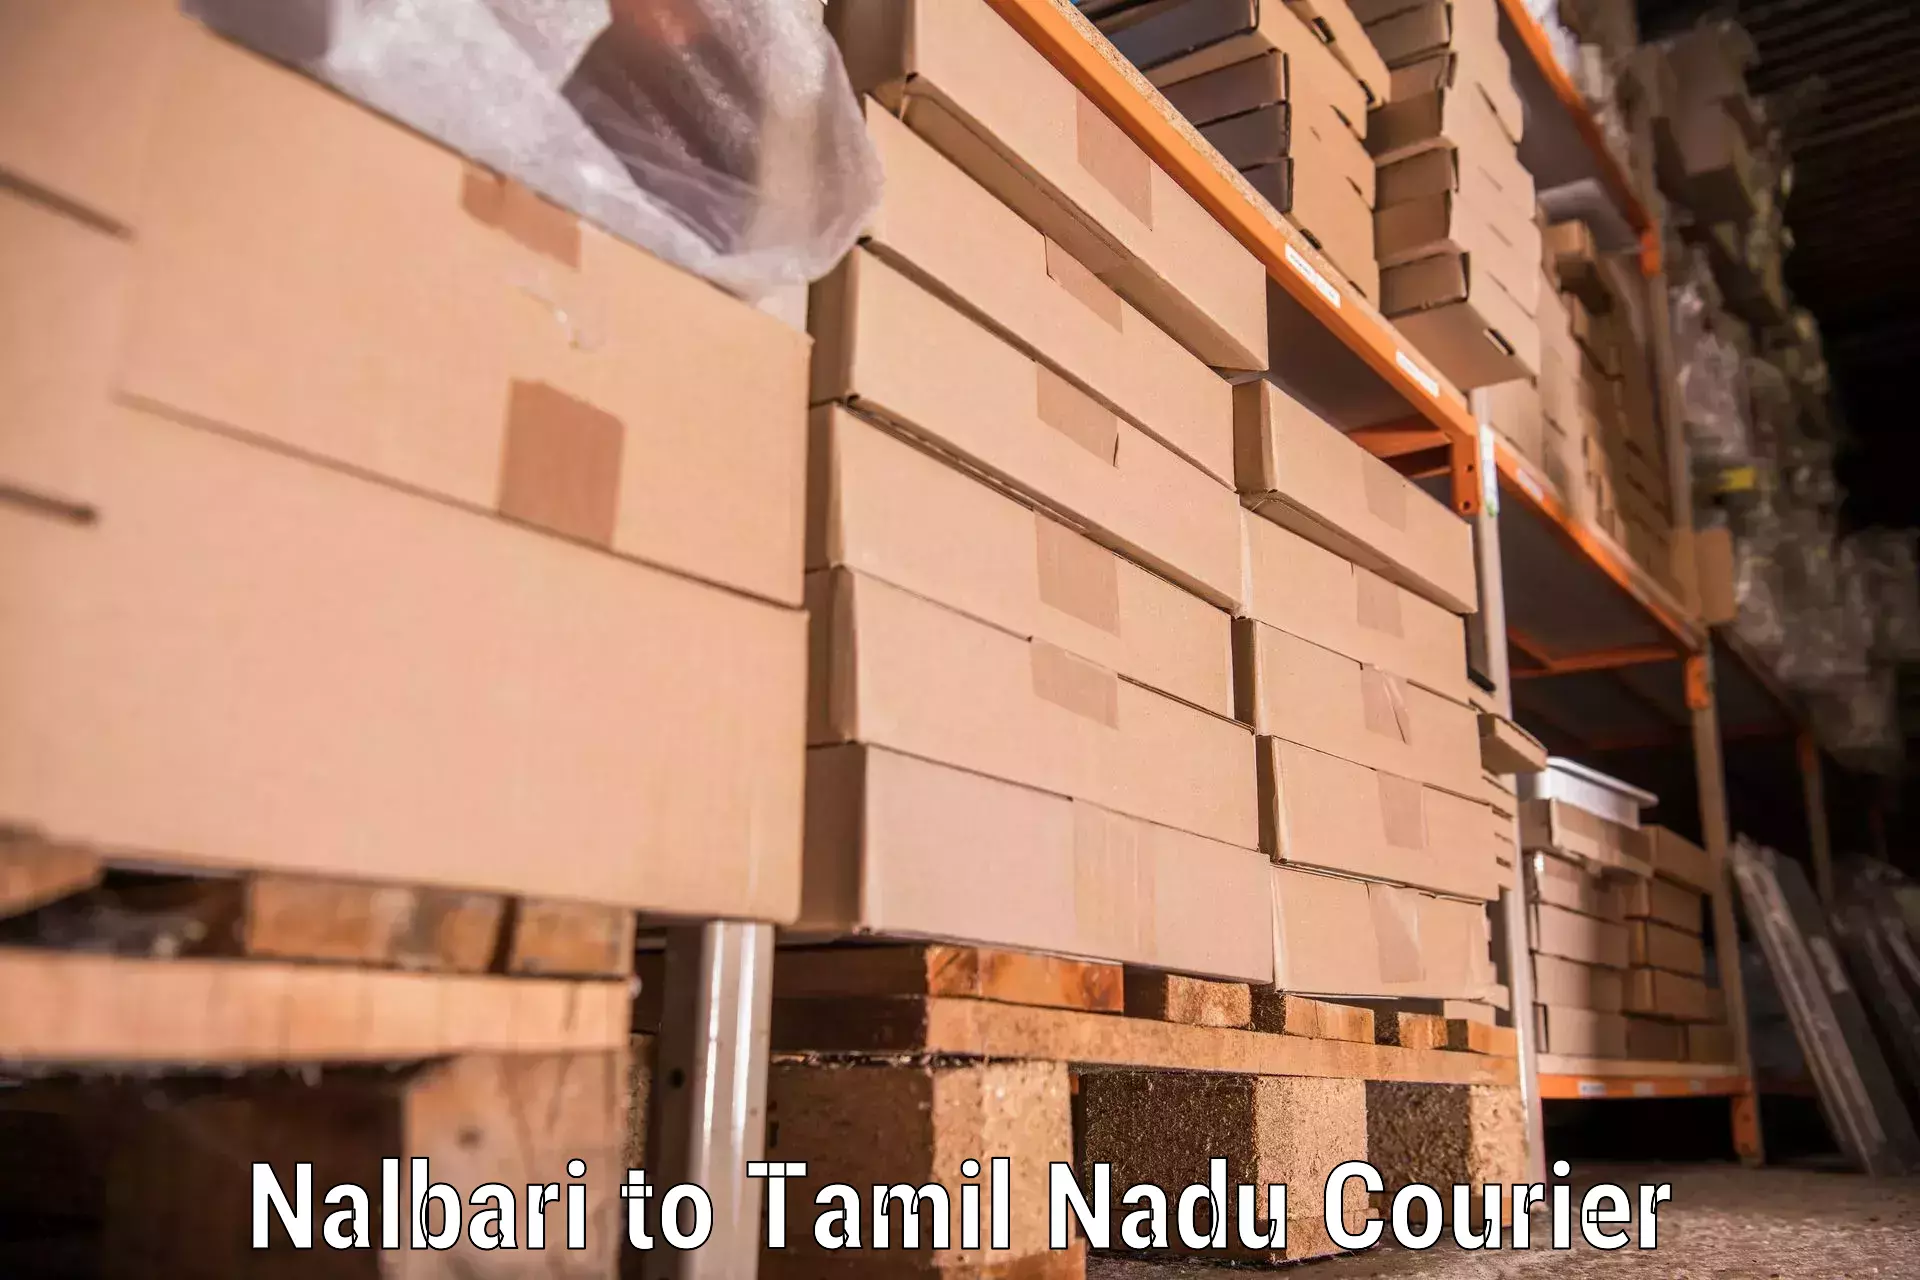 Nationwide moving services Nalbari to Thiruthuraipoondi